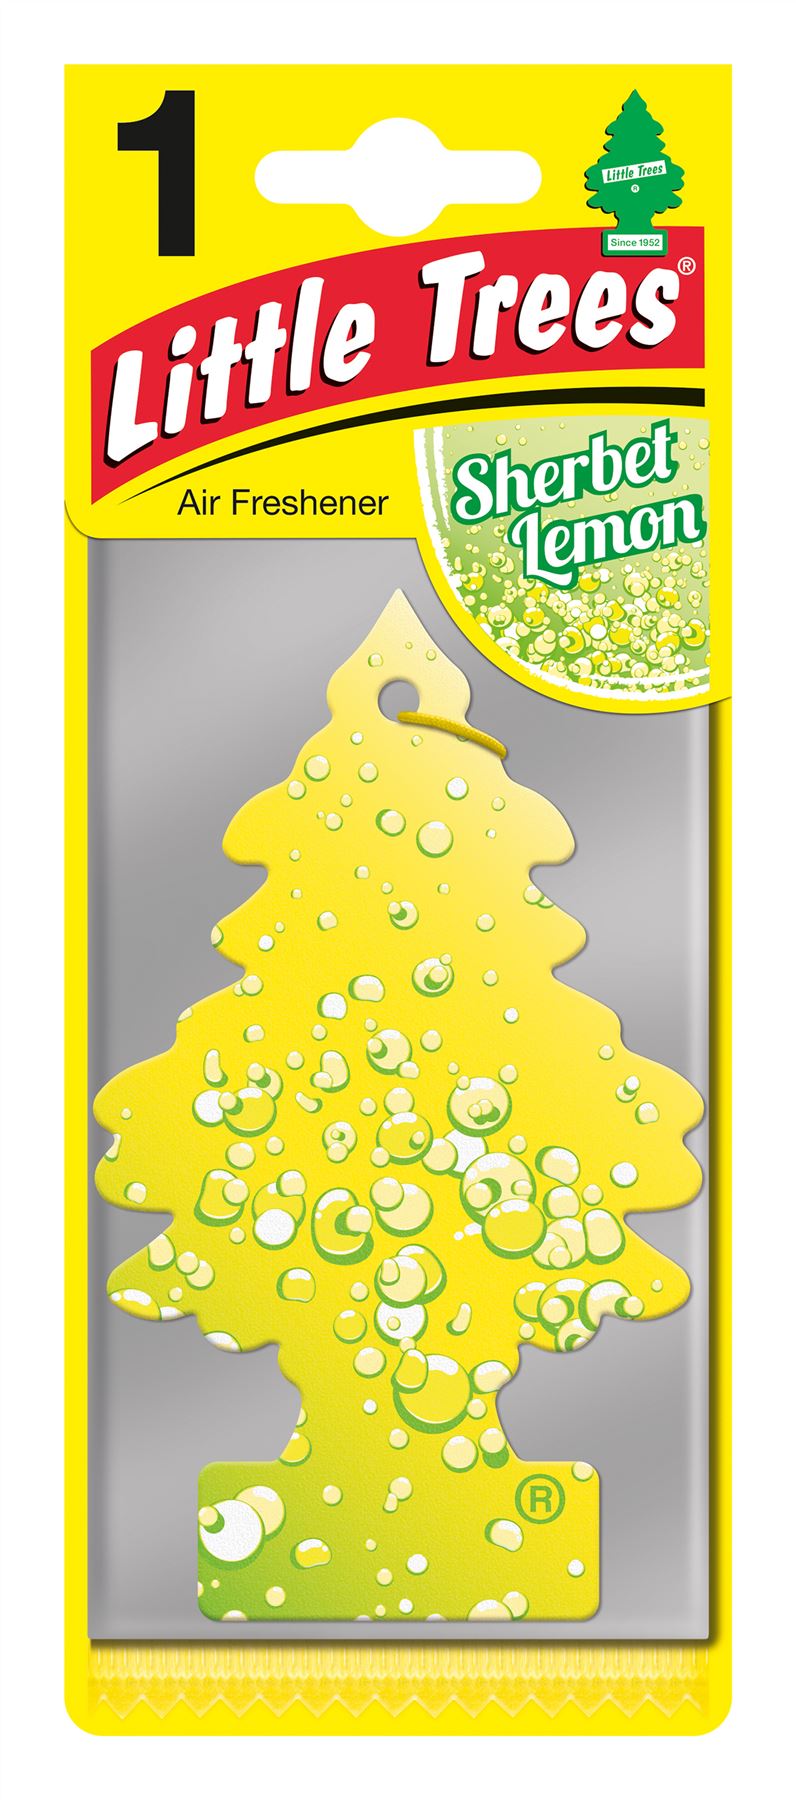 Little Trees MTR0073 Single Carded Air Freshener - Sherbet Lemon